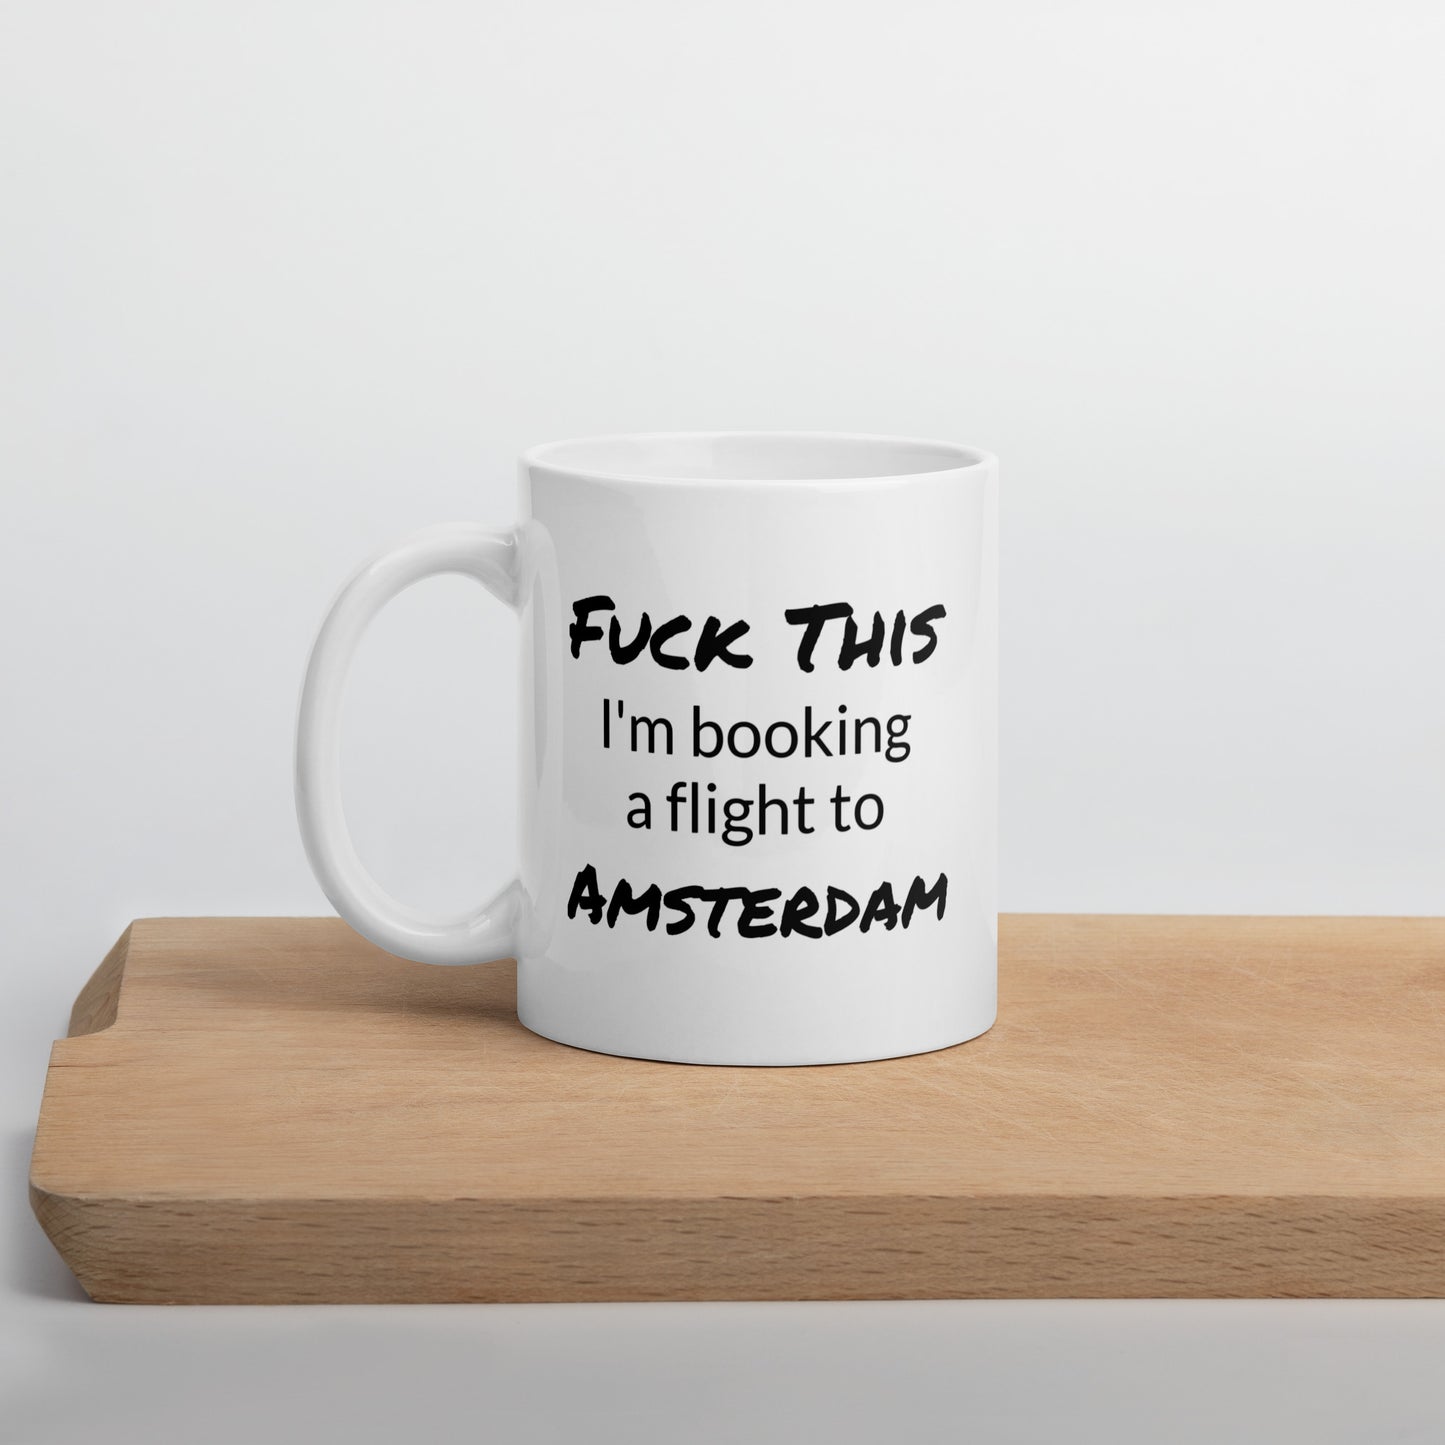 Amsterdam Coffee Mug, Travel Coffee Mug, Fuck This I'm Booking A Flight To Amsterdam, Travel Lover Mug, Travel Lover Gift, Travel Gifts